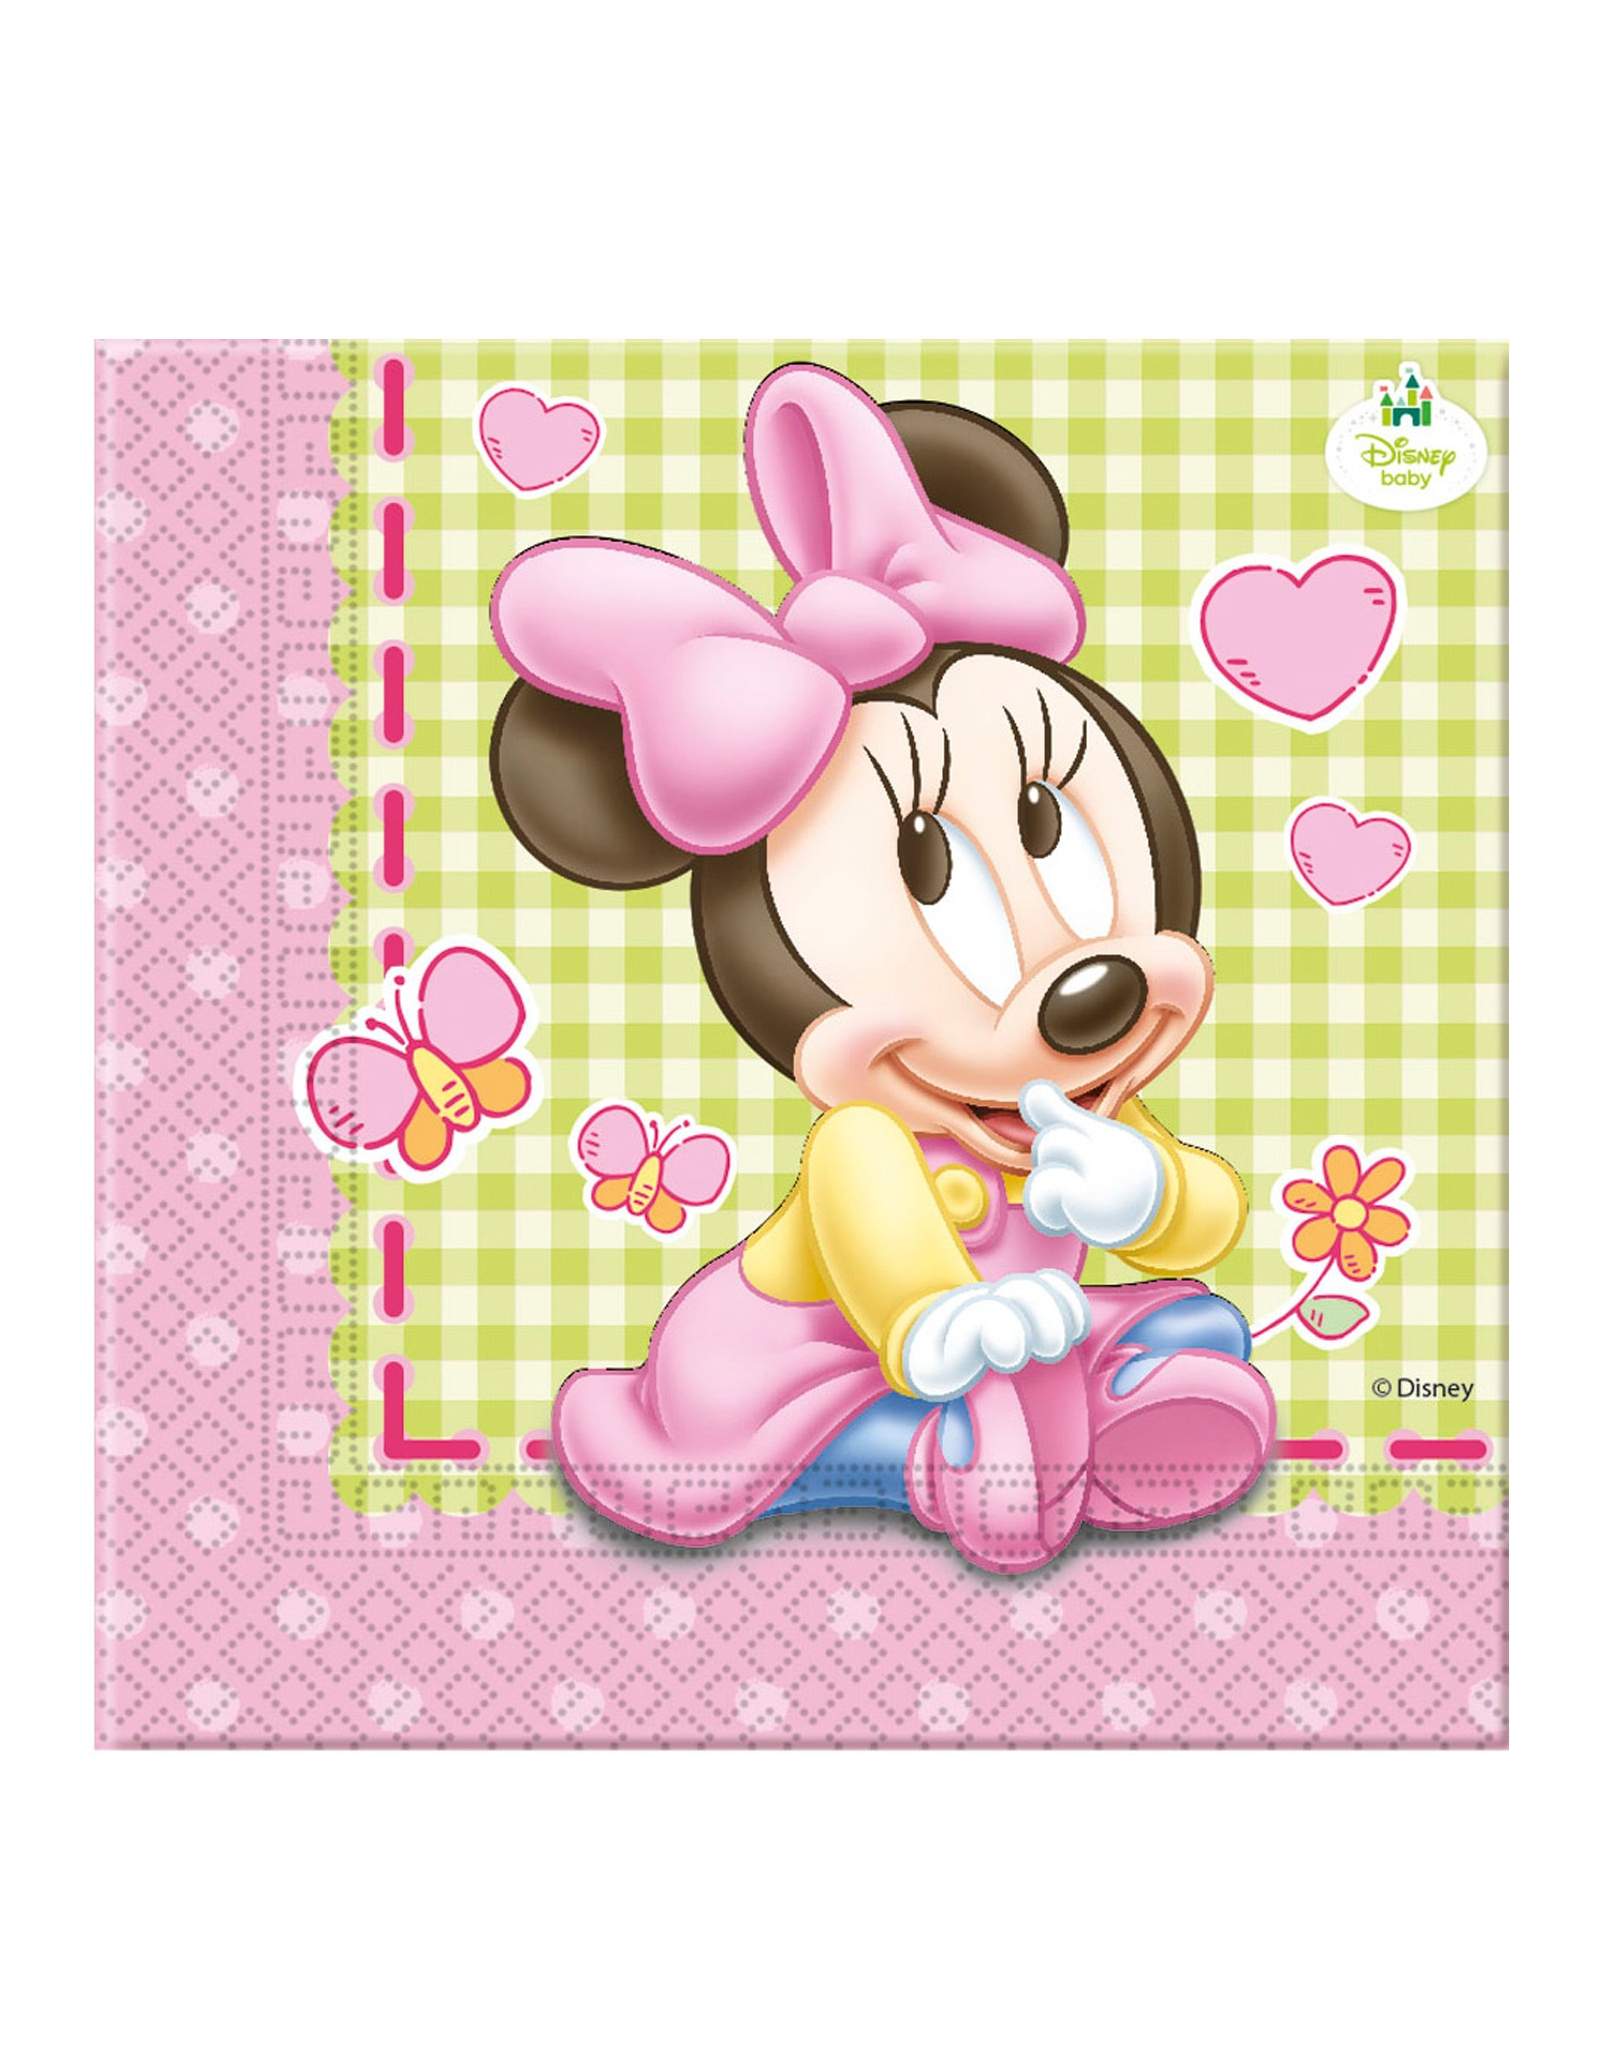 Pack décoration d'anniversaire 1 an fille bébé Minnie Disney